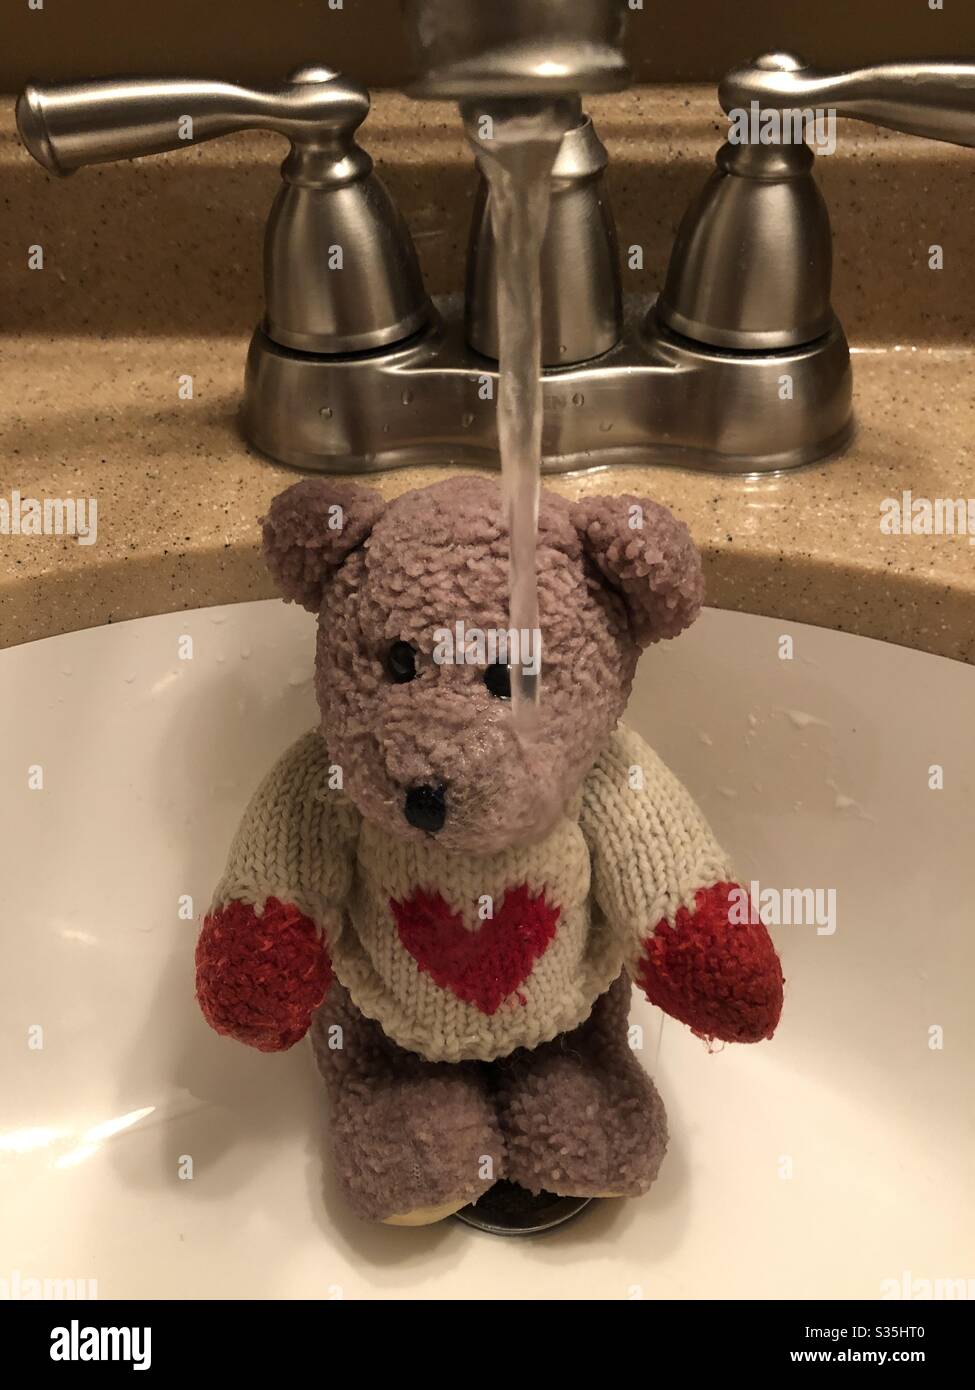 Badezeit für einen süßen Teddybären. Stockfoto